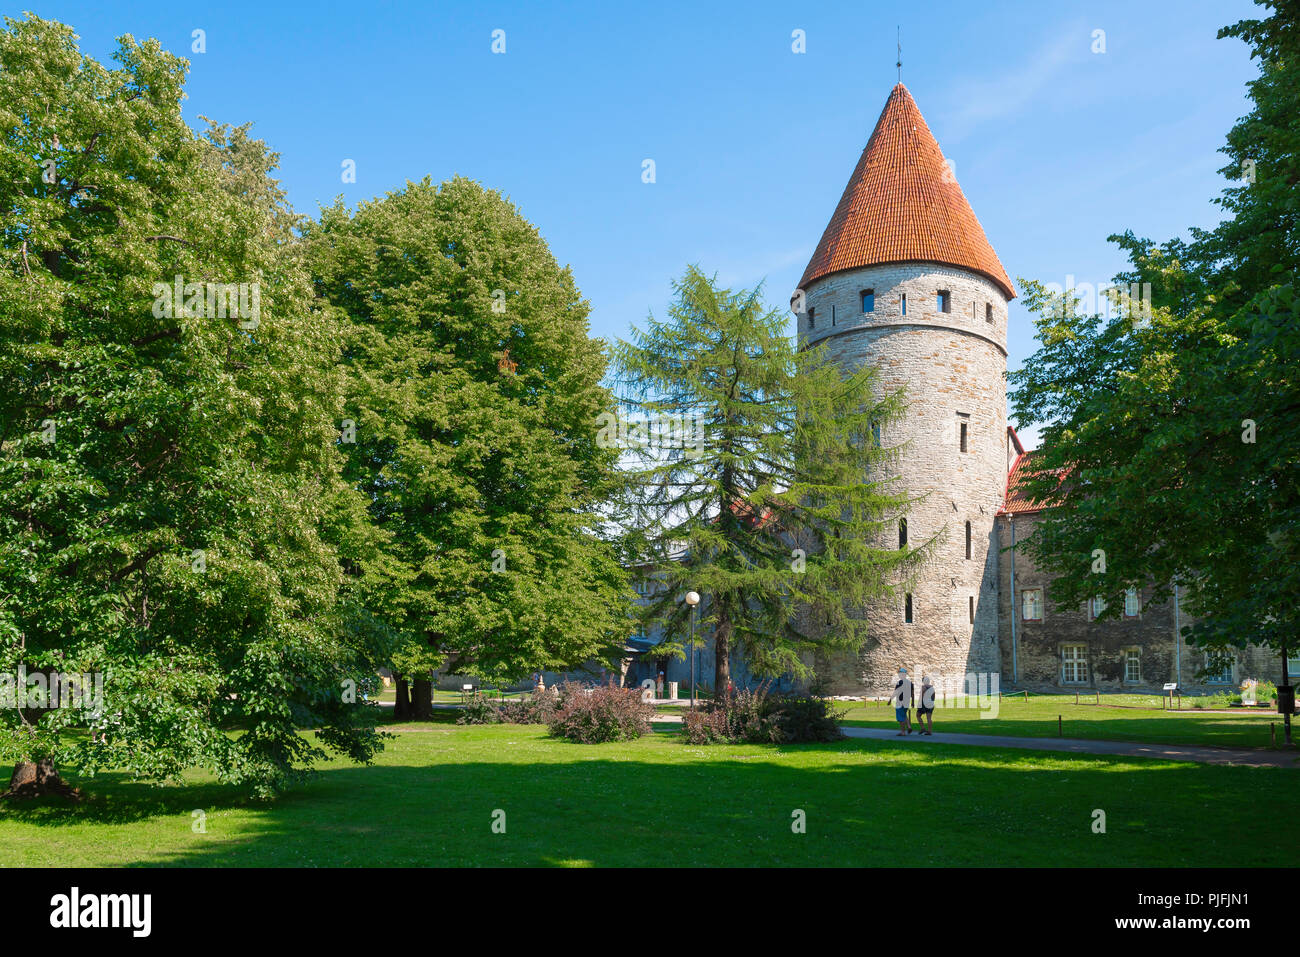 Tallinn il parco giardino, vista su tutta la città parco e giardini verso uno dei nove torri collegate da città bassa parete nel centro di Tallinn, Estonia. Foto Stock